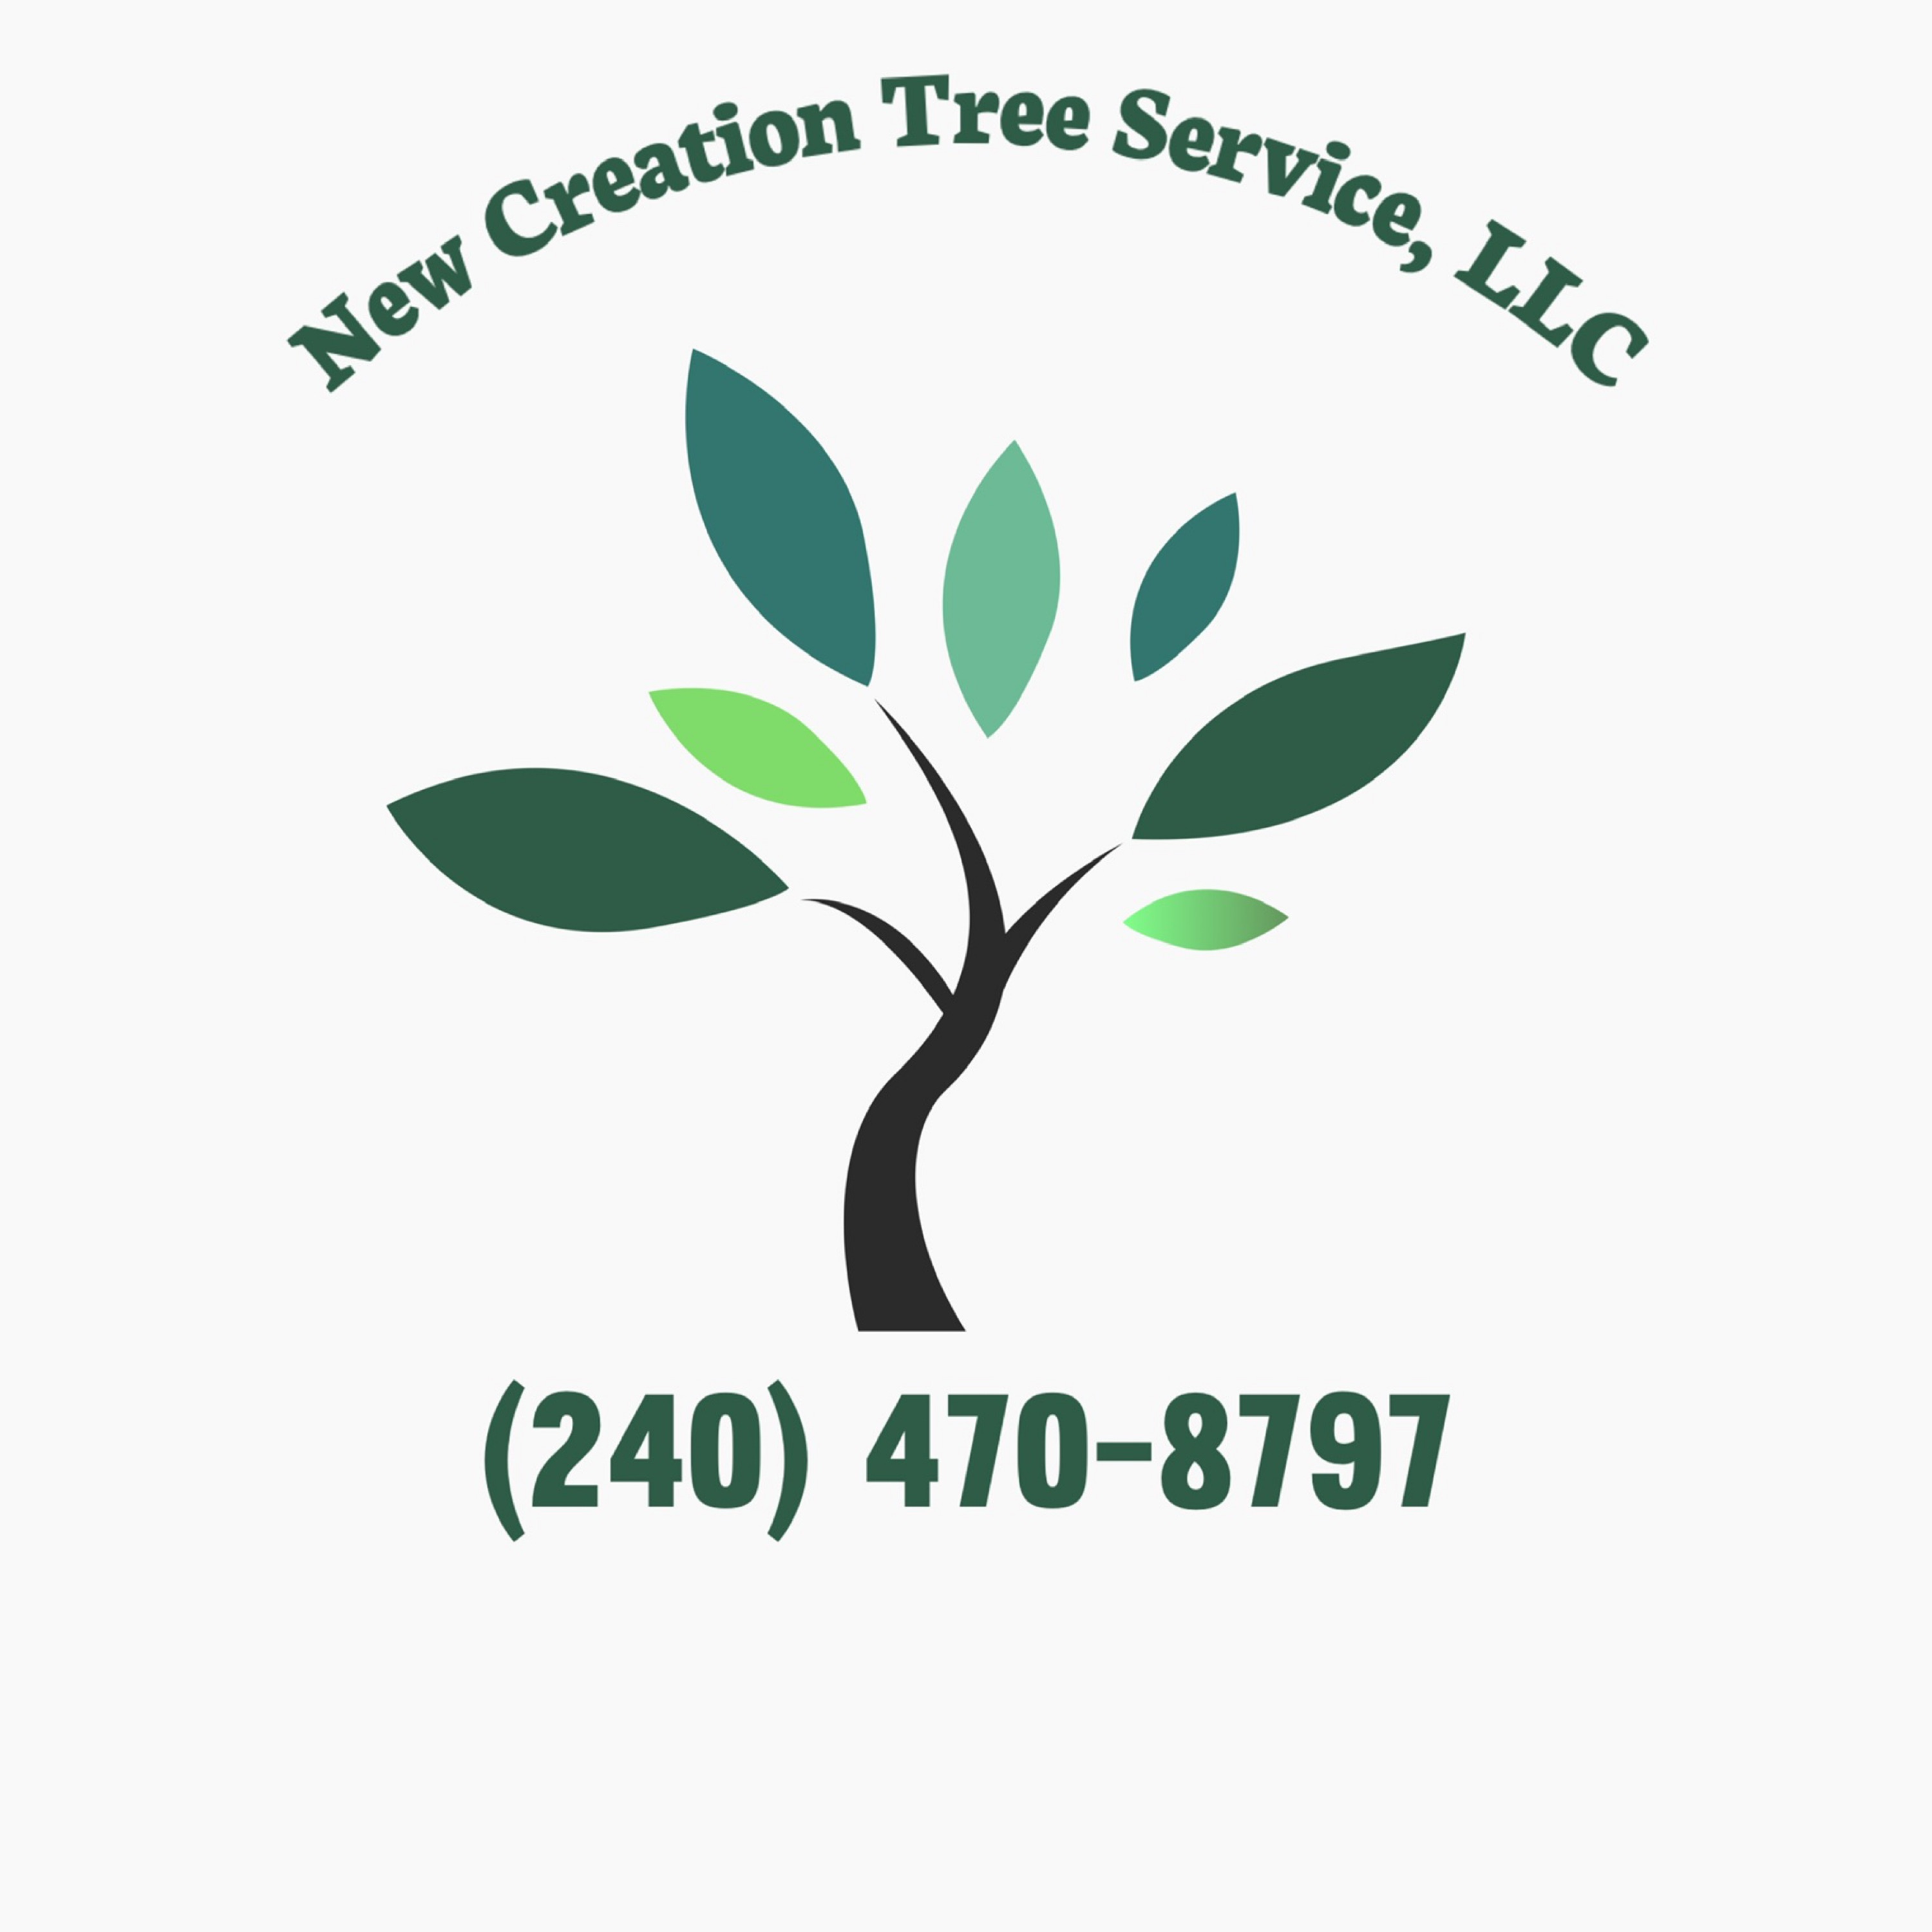 New Creation Tree Service Logo